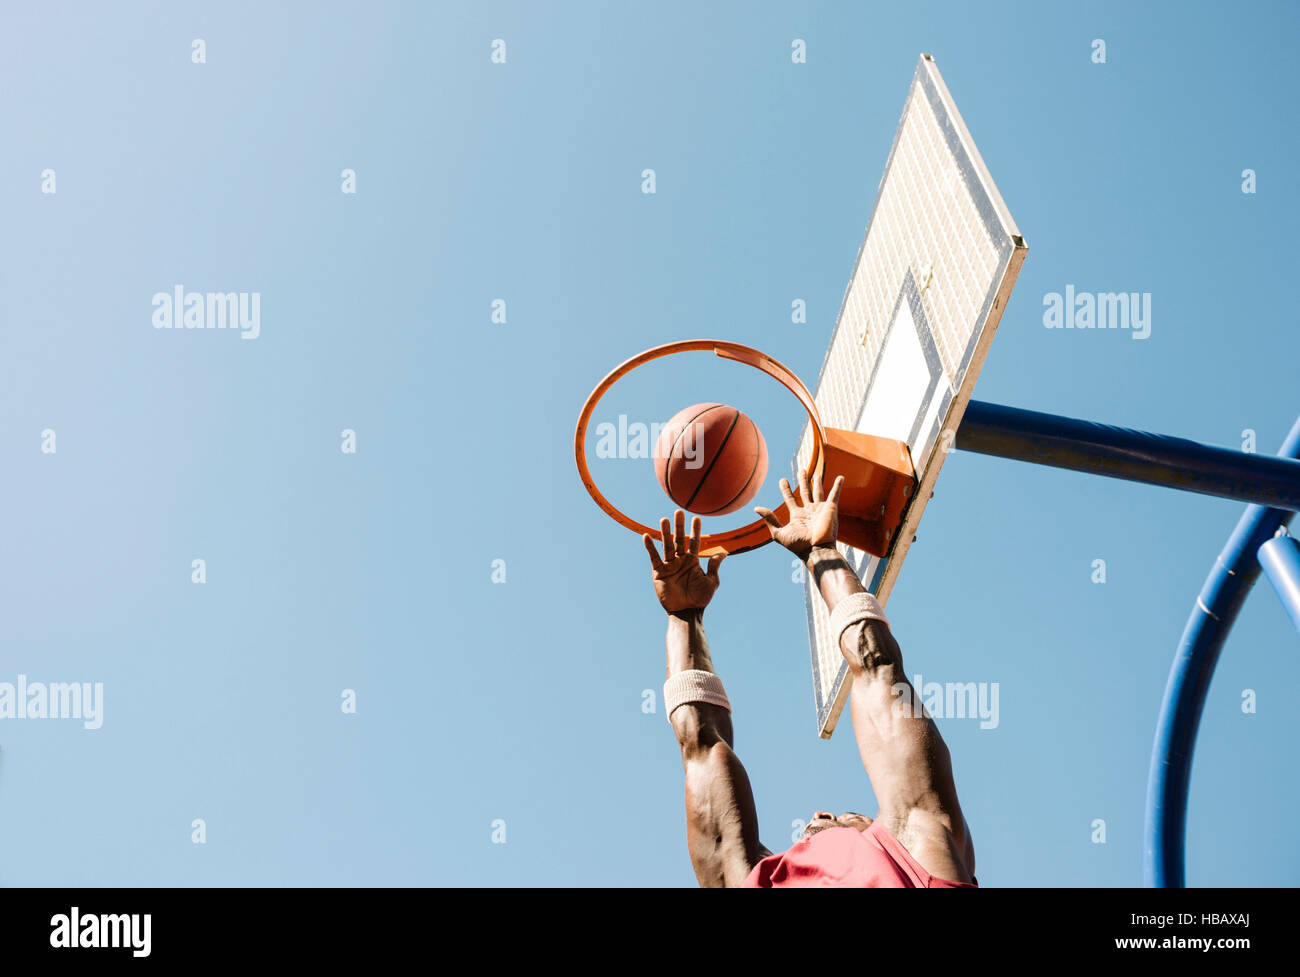 Joven jugador de baloncesto masculino lanzando la bola de baloncesto Foto de stock